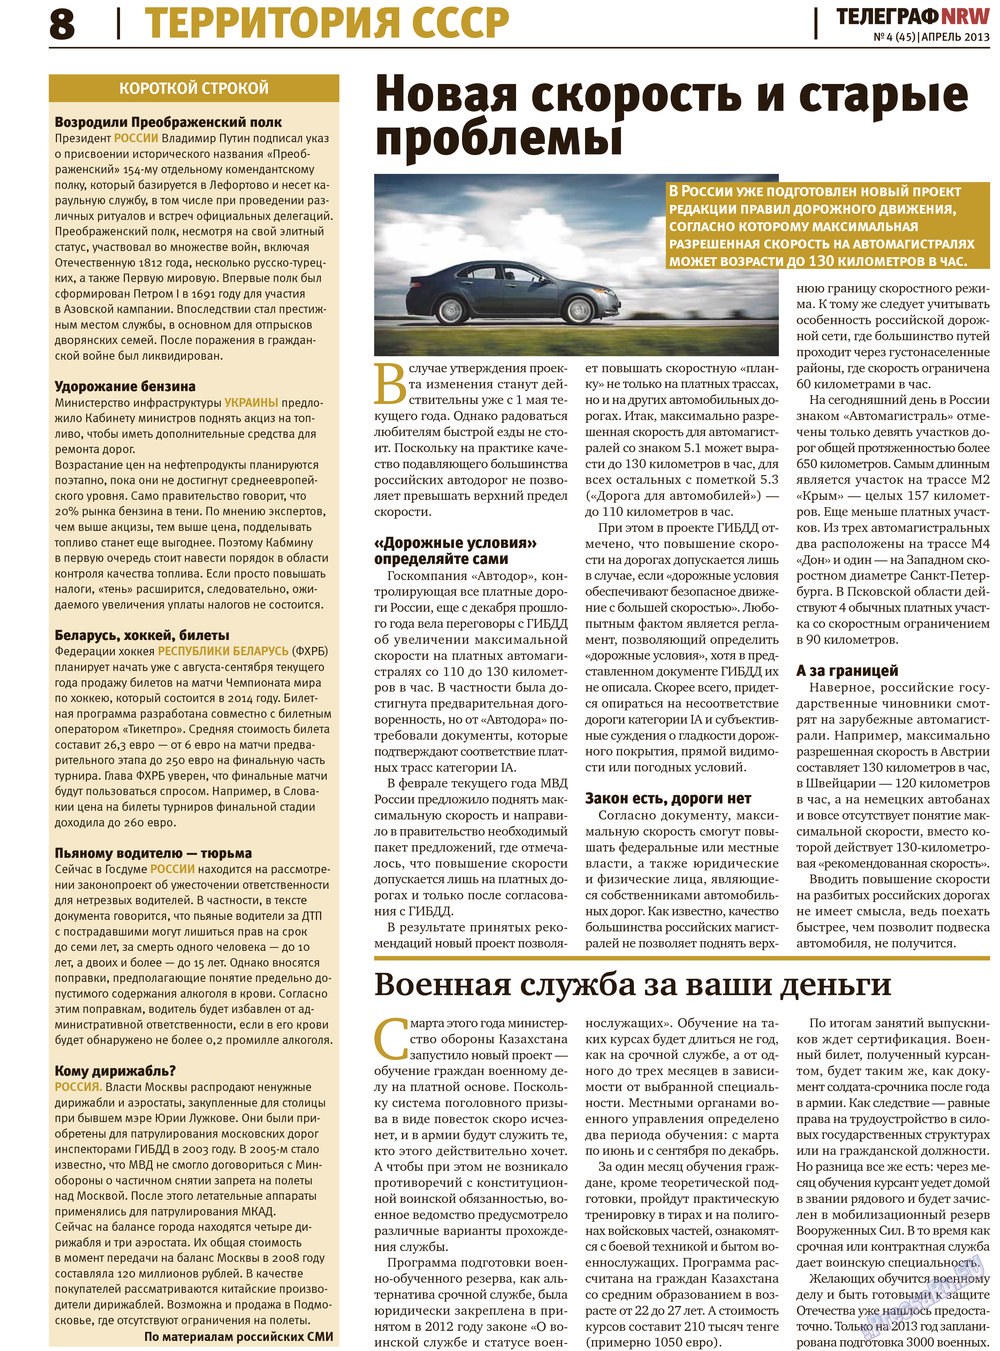 Телеграф NRW (газета). 2013 год, номер 4, стр. 8